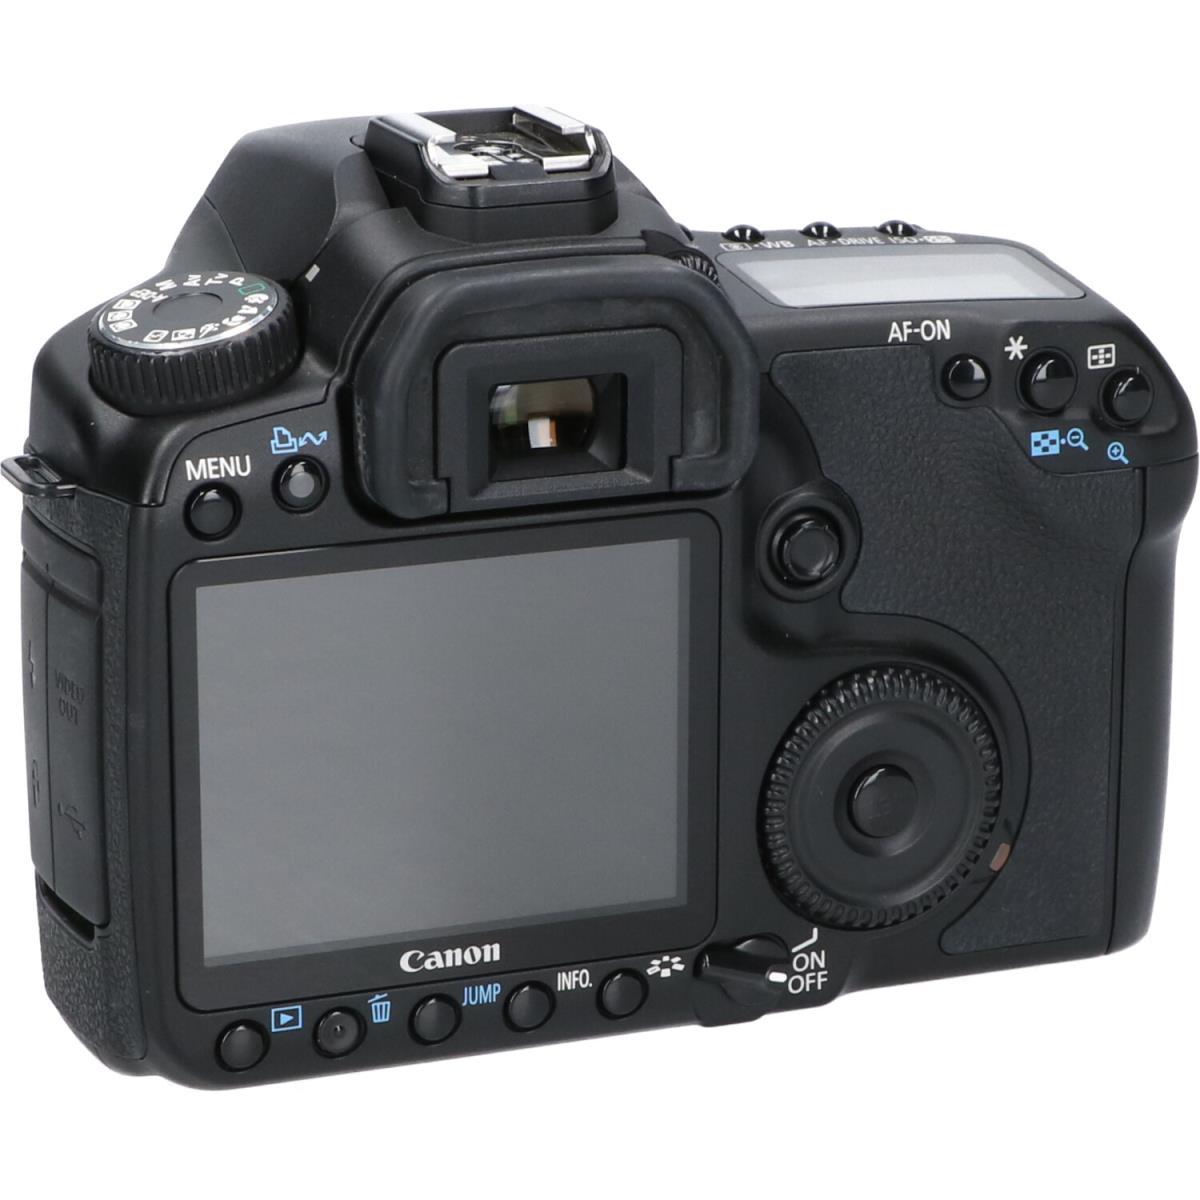 Canon EOS40D一眼デジタルカメラ コンパクトフラッシュ64MB、1GBカメラ